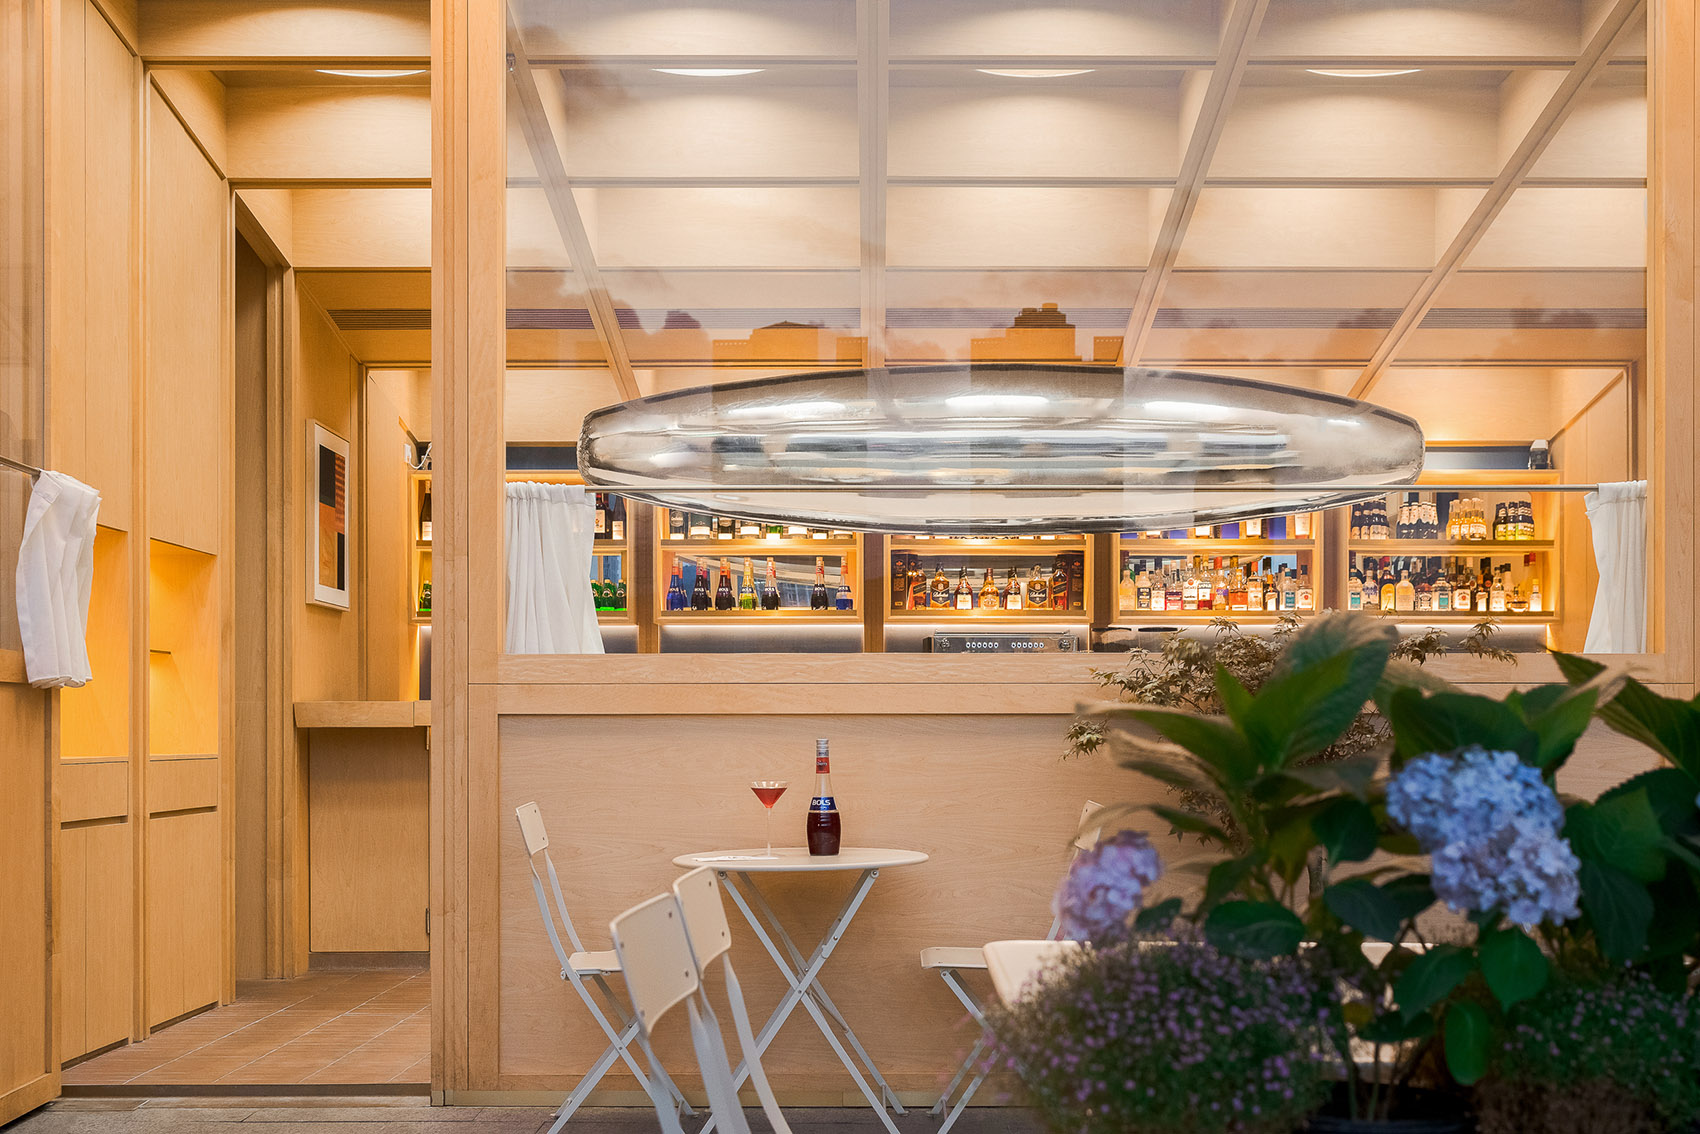 浮廊C2 Cafe &  Bar咖啡厅，深圳/专门为年轻人打造的“空中楼阁”-61